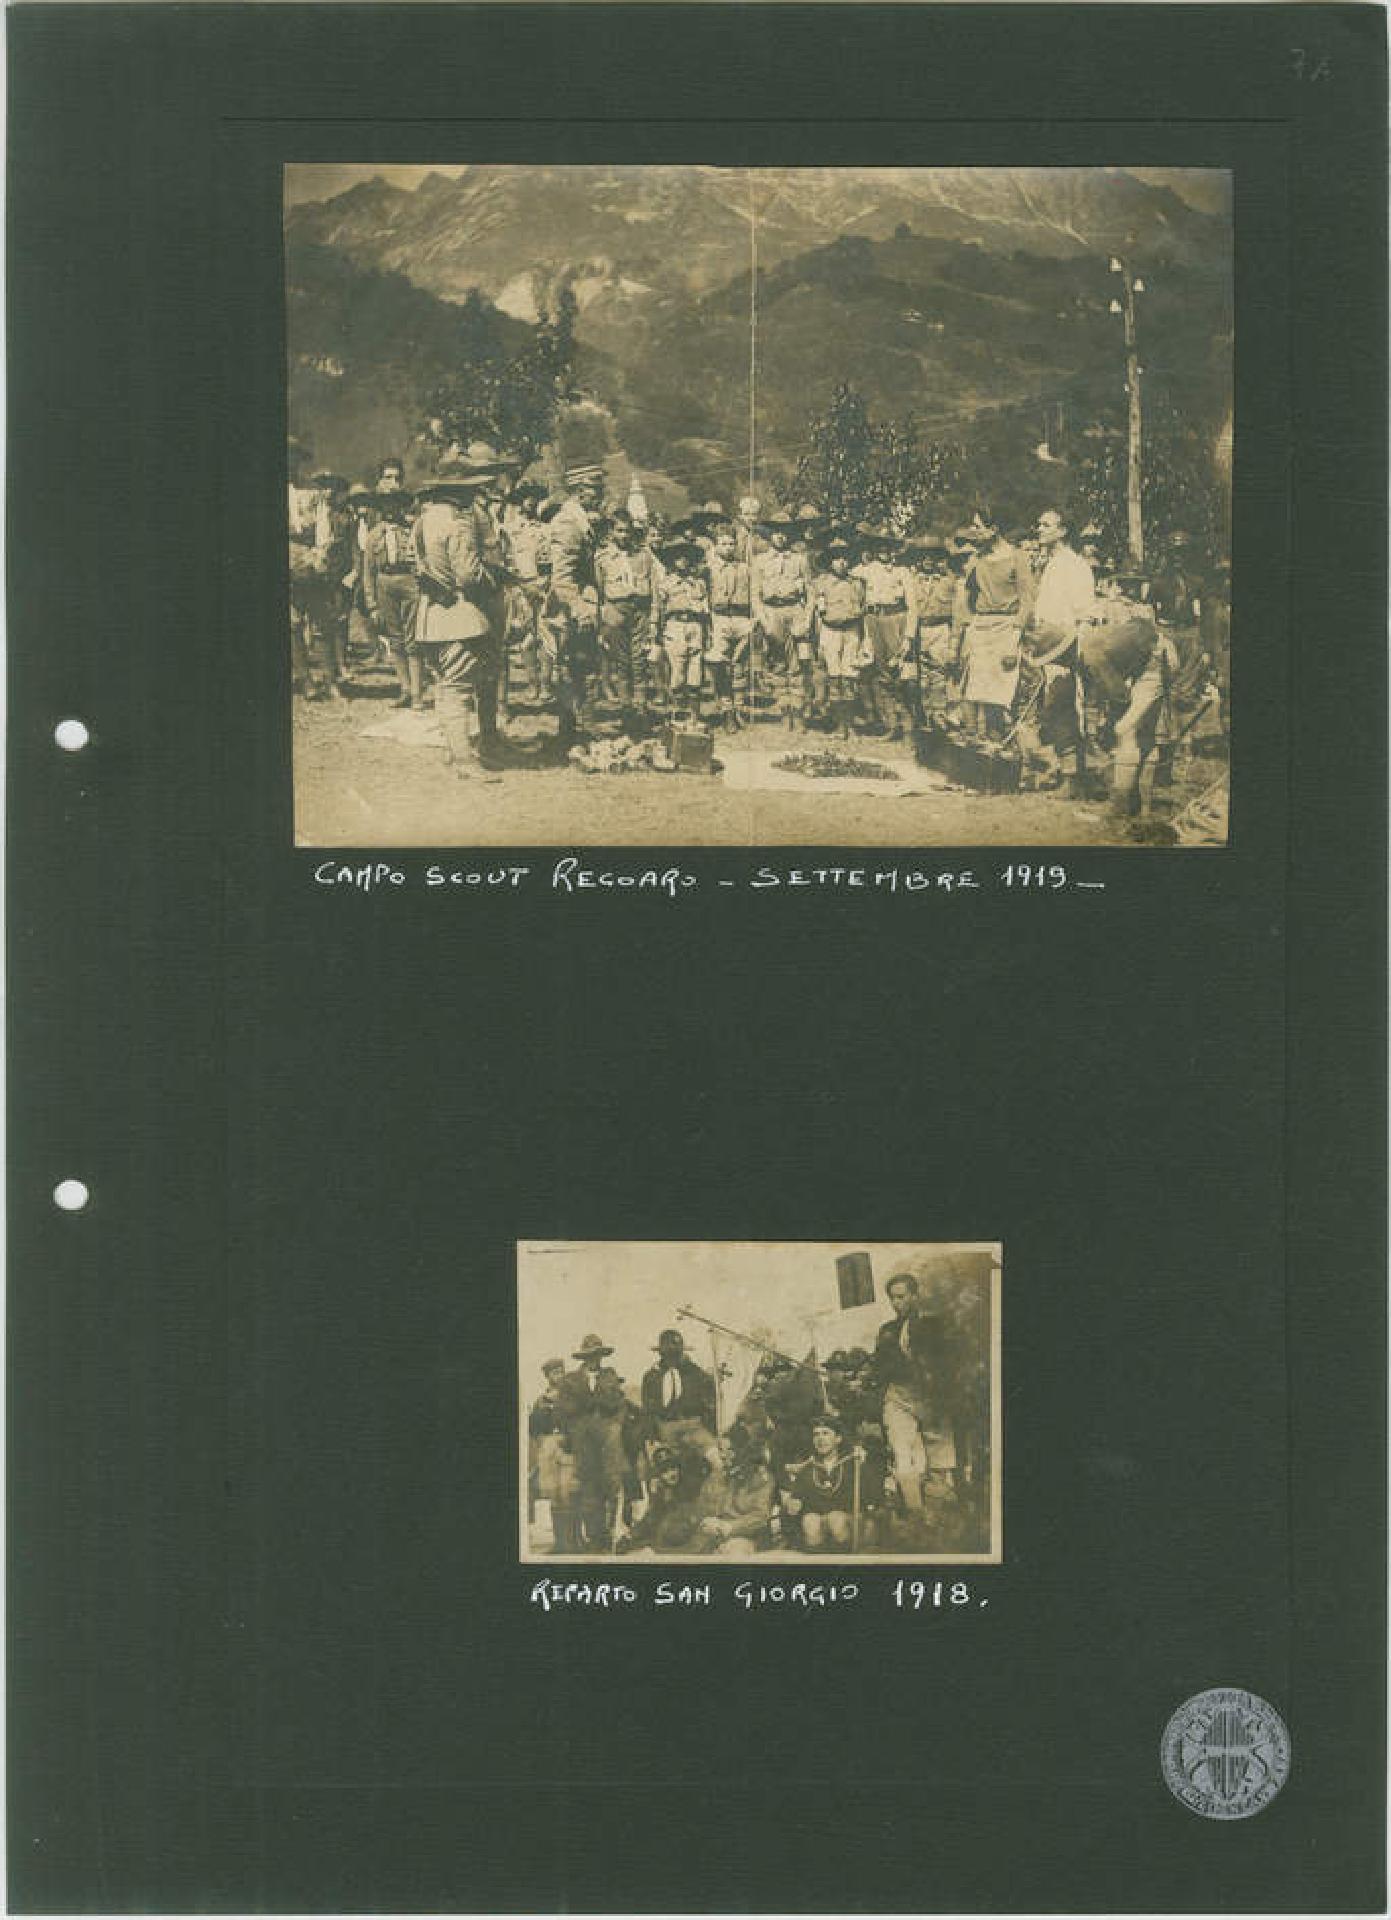 Foto del Reparto S. Giorgio nel 1918 e del Campo scout a Recoaro del 1919. Archivio storico Sezione Cngei di Vicenza, Sezione Cngei, Album e raccolte di fotografie, b. 60, c. 71r.